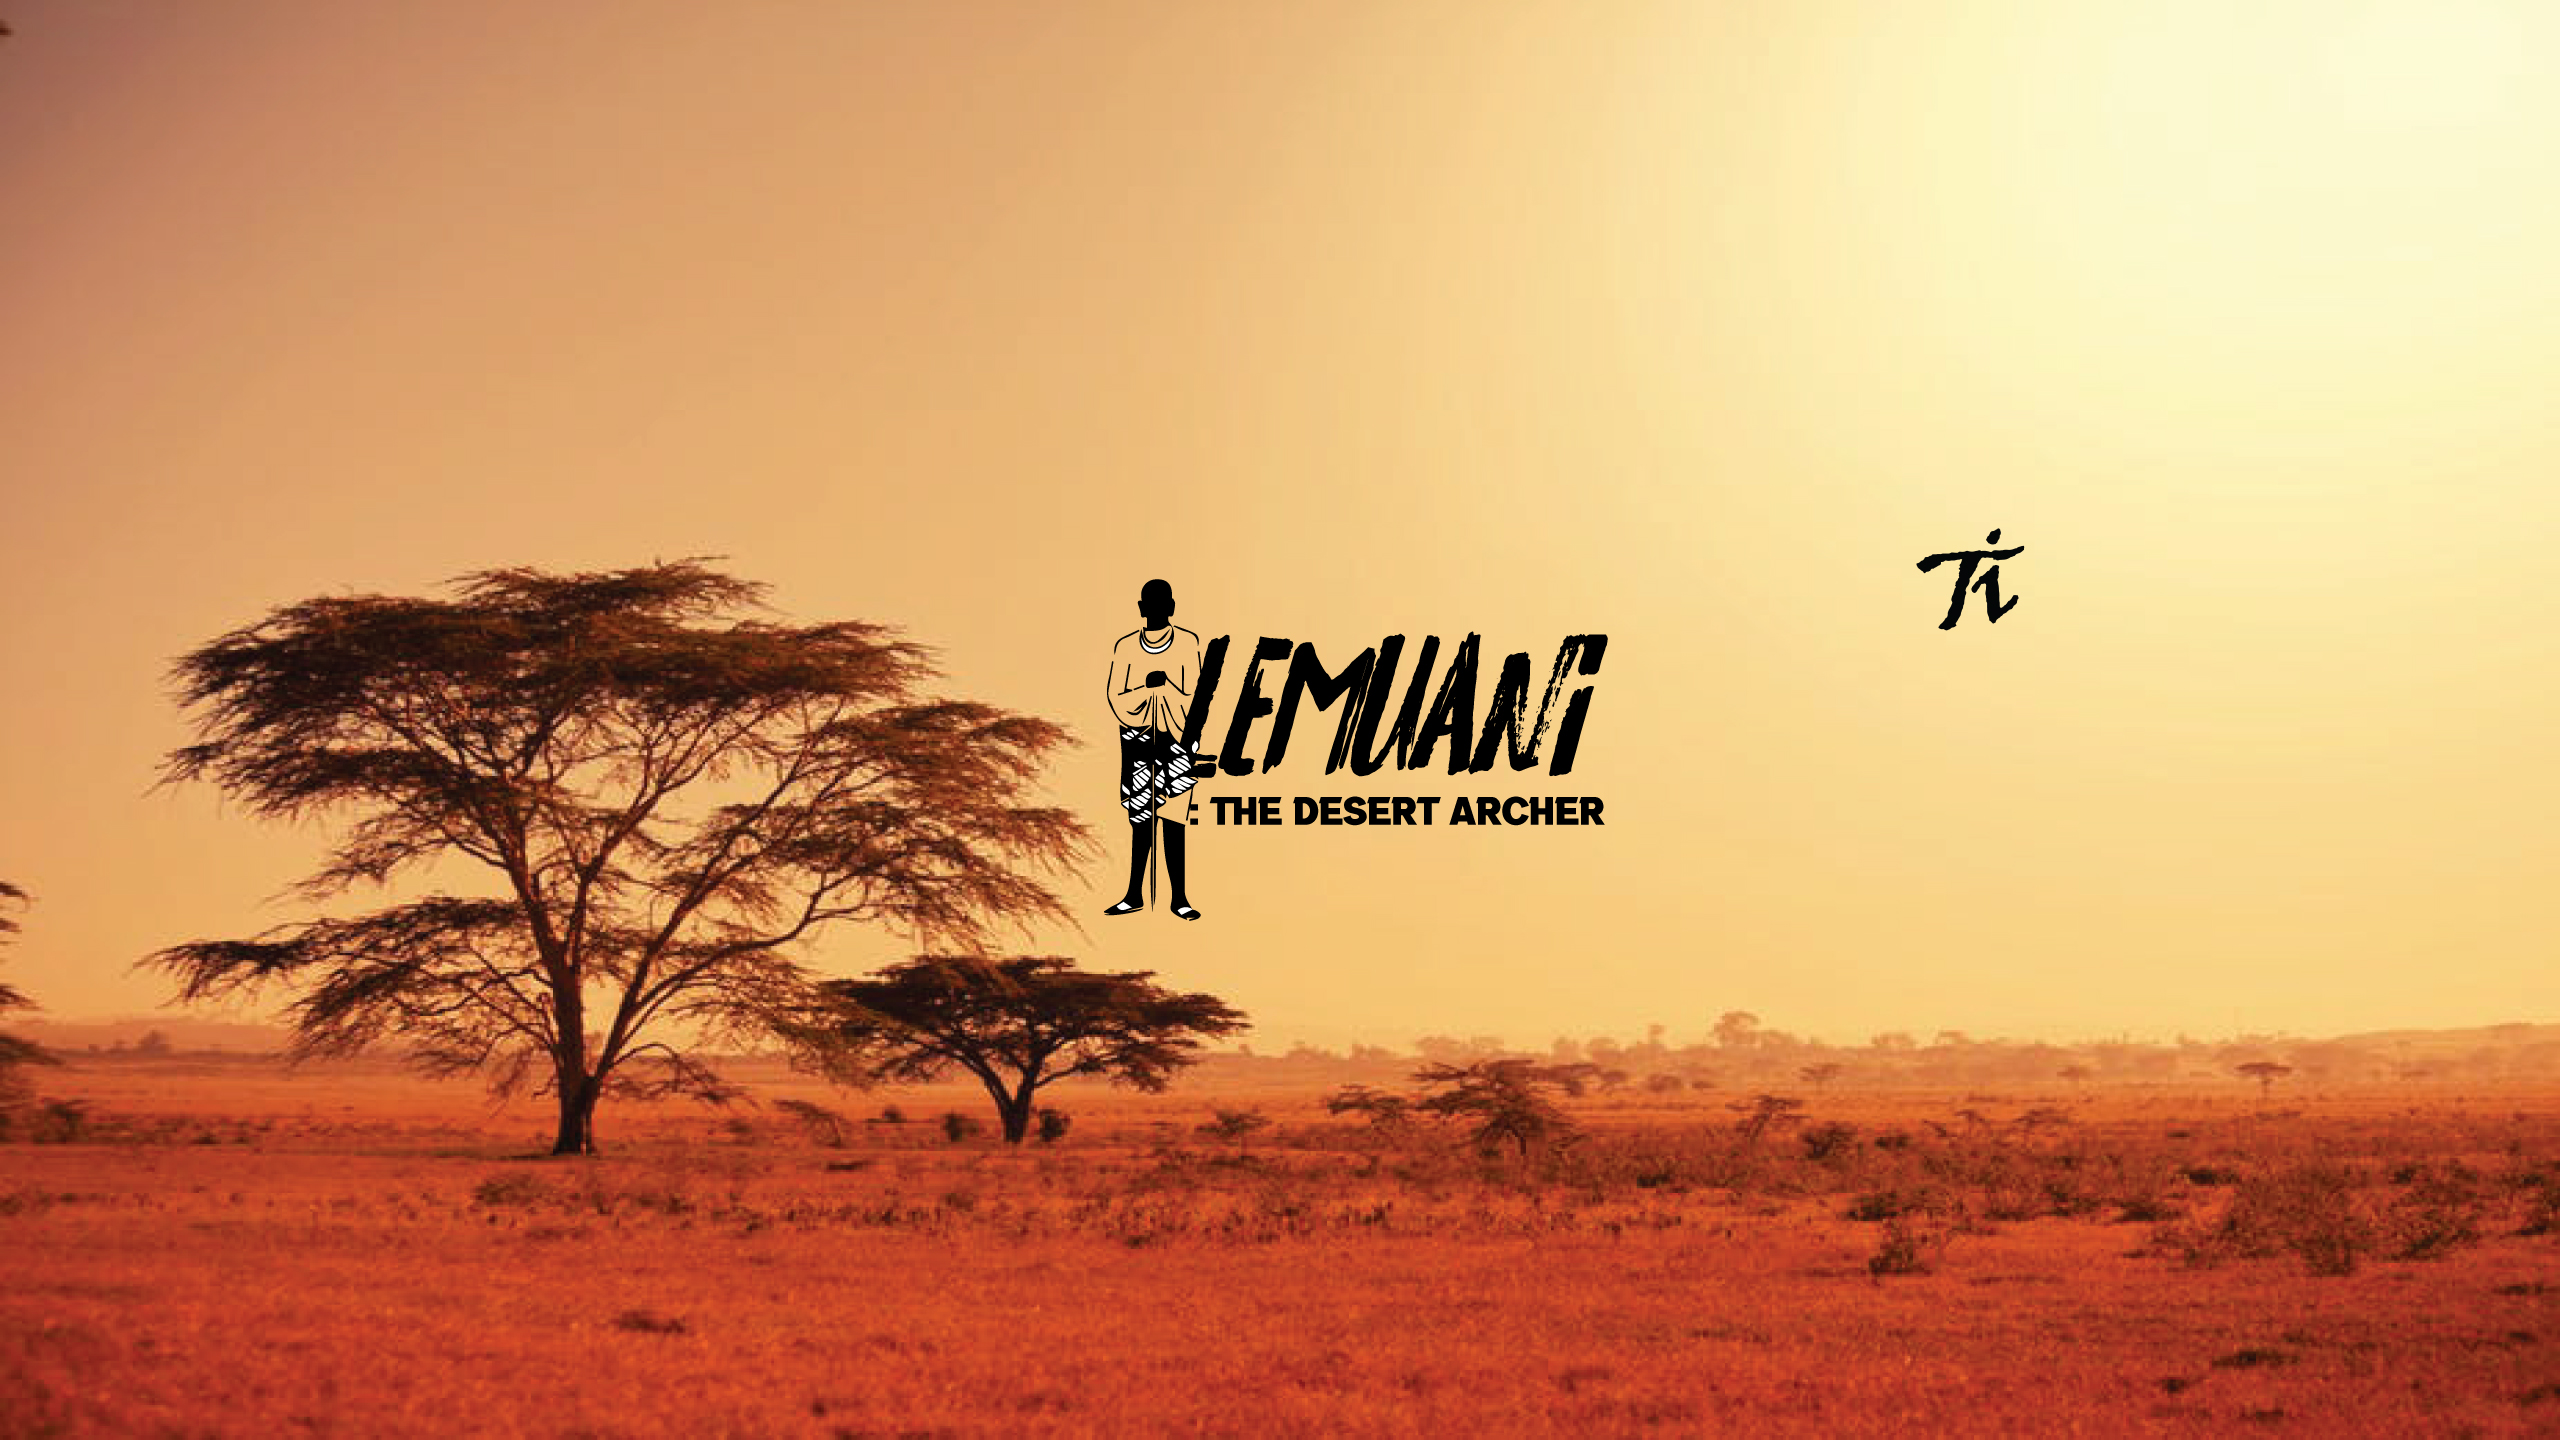 Lemuani : The Desert Archer